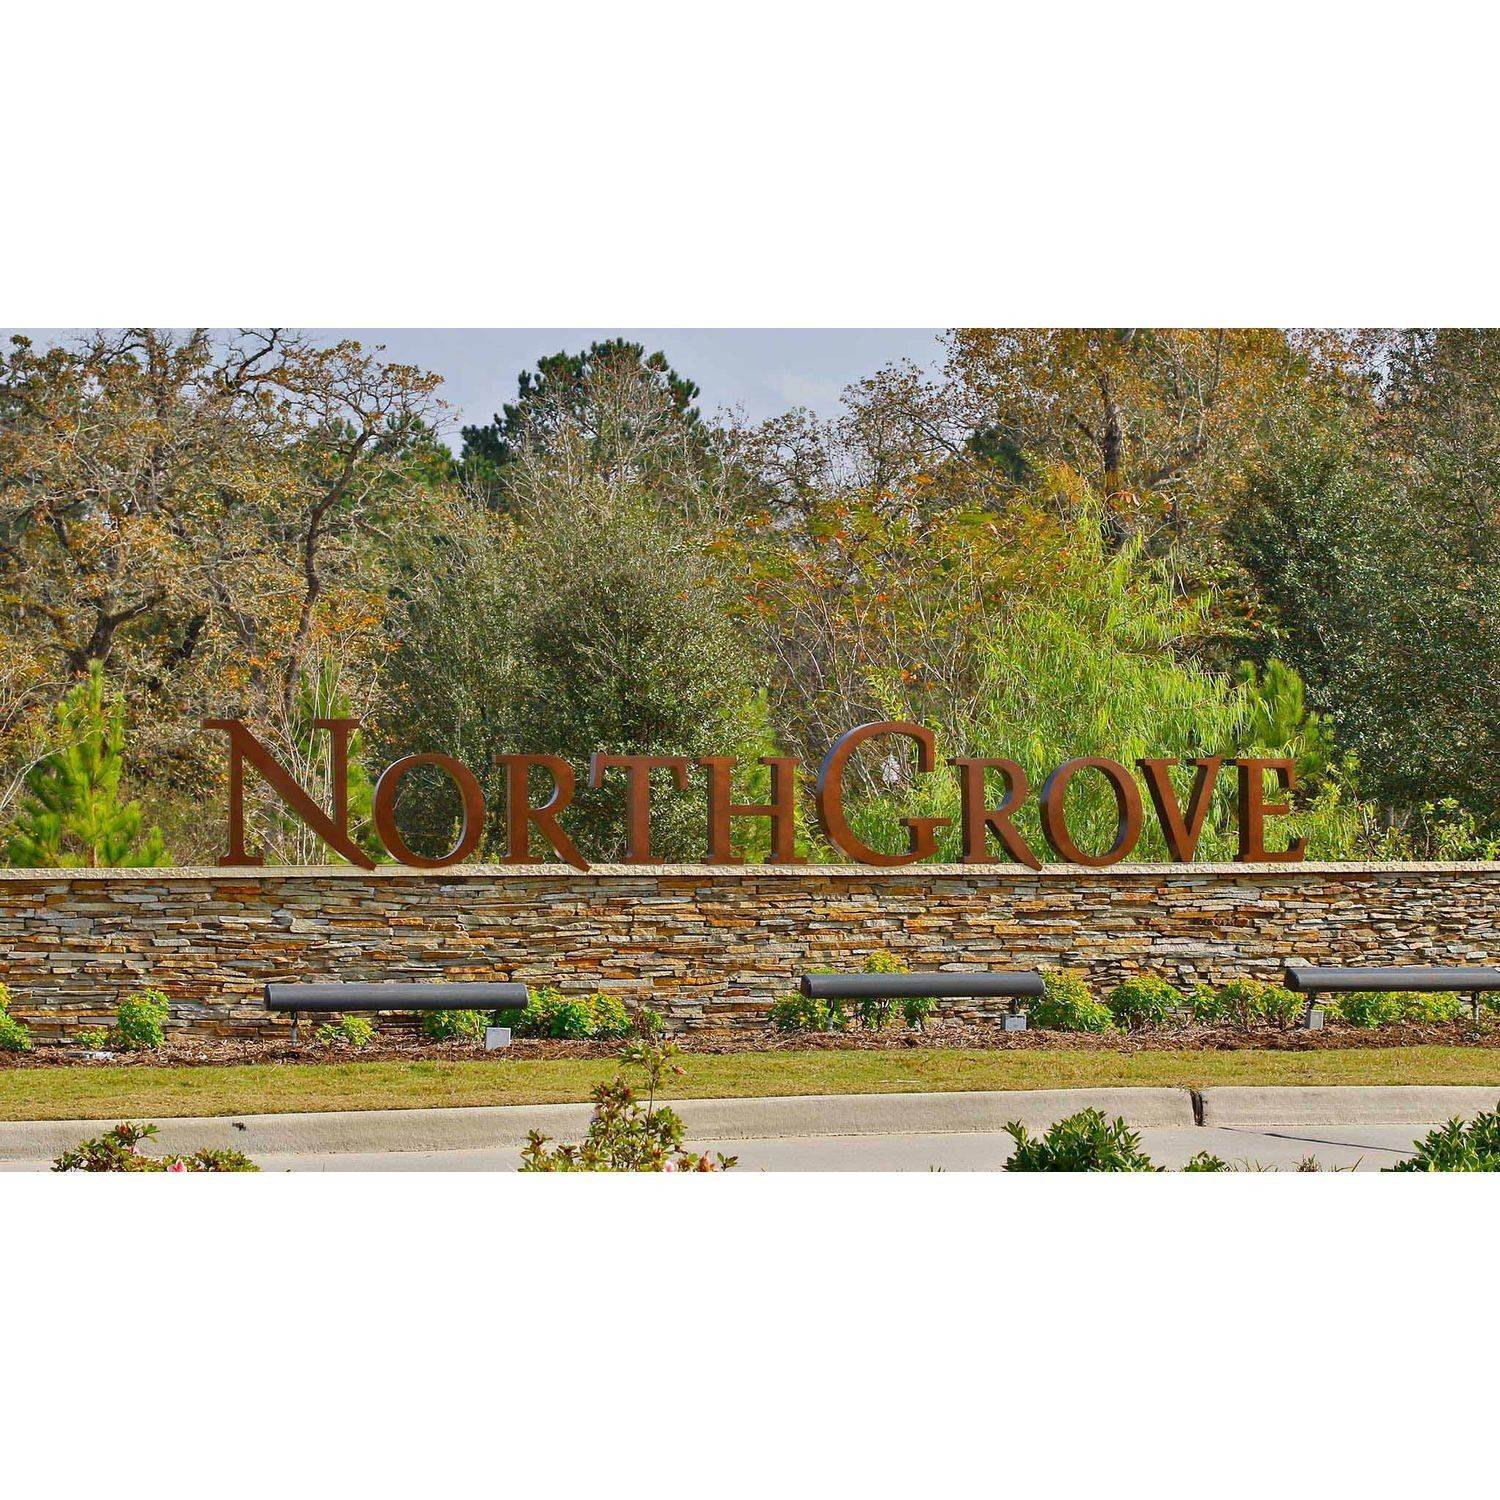 NorthGrove 50' edificio a 7385 Grandview Meadow Drive, Magnolia, TX 77354